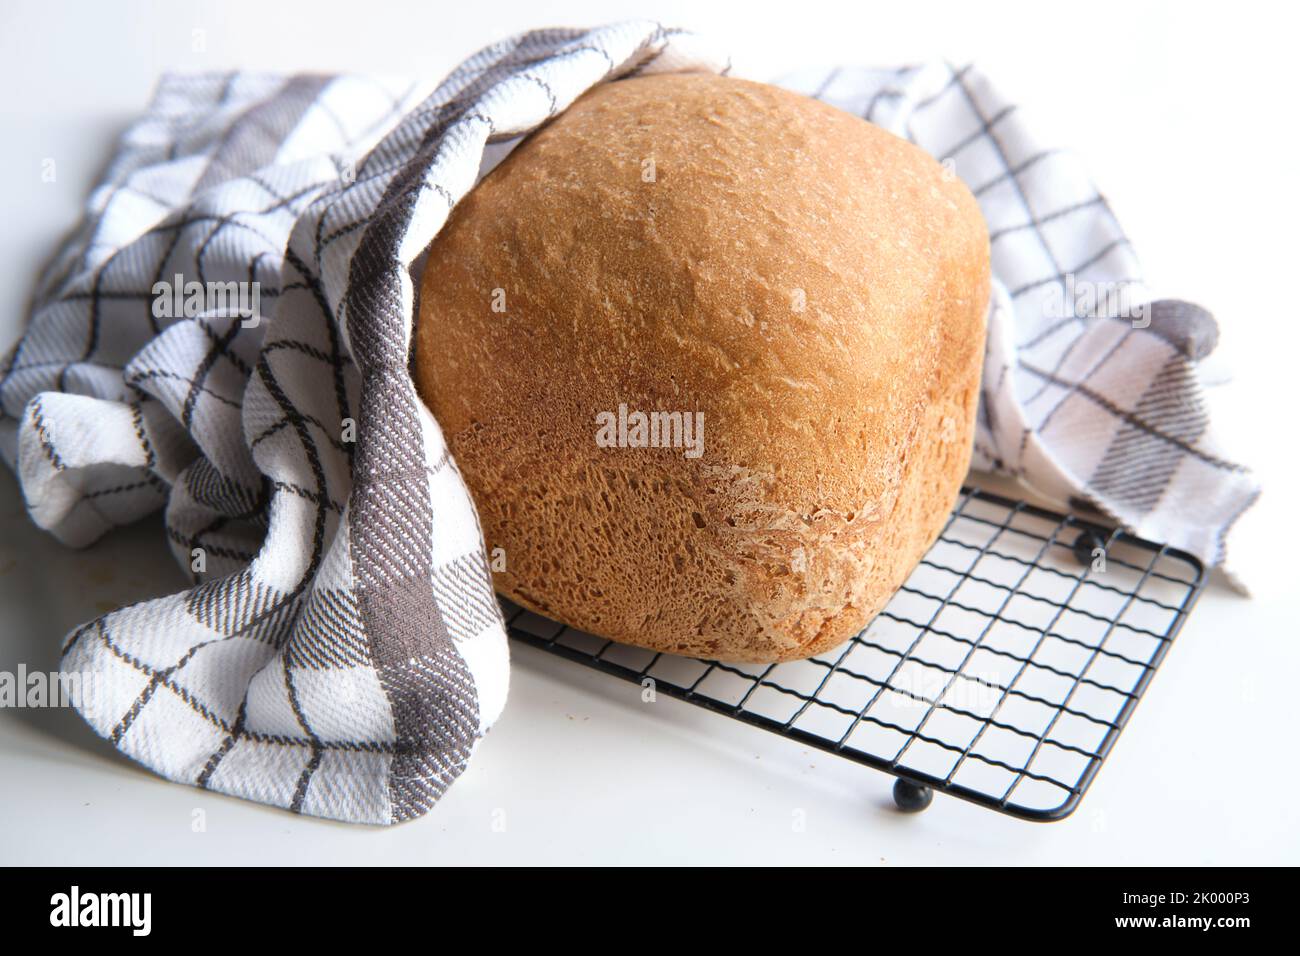 Hausgemachtes Bauernhaus gemischtes Brot. Nahaufnahme von Brot, das in der Backmaschine gebacken wurde. Vollkornbrot auf Trockengestell mit gestreifem Handtuch auf weißem Tisch Stockfoto